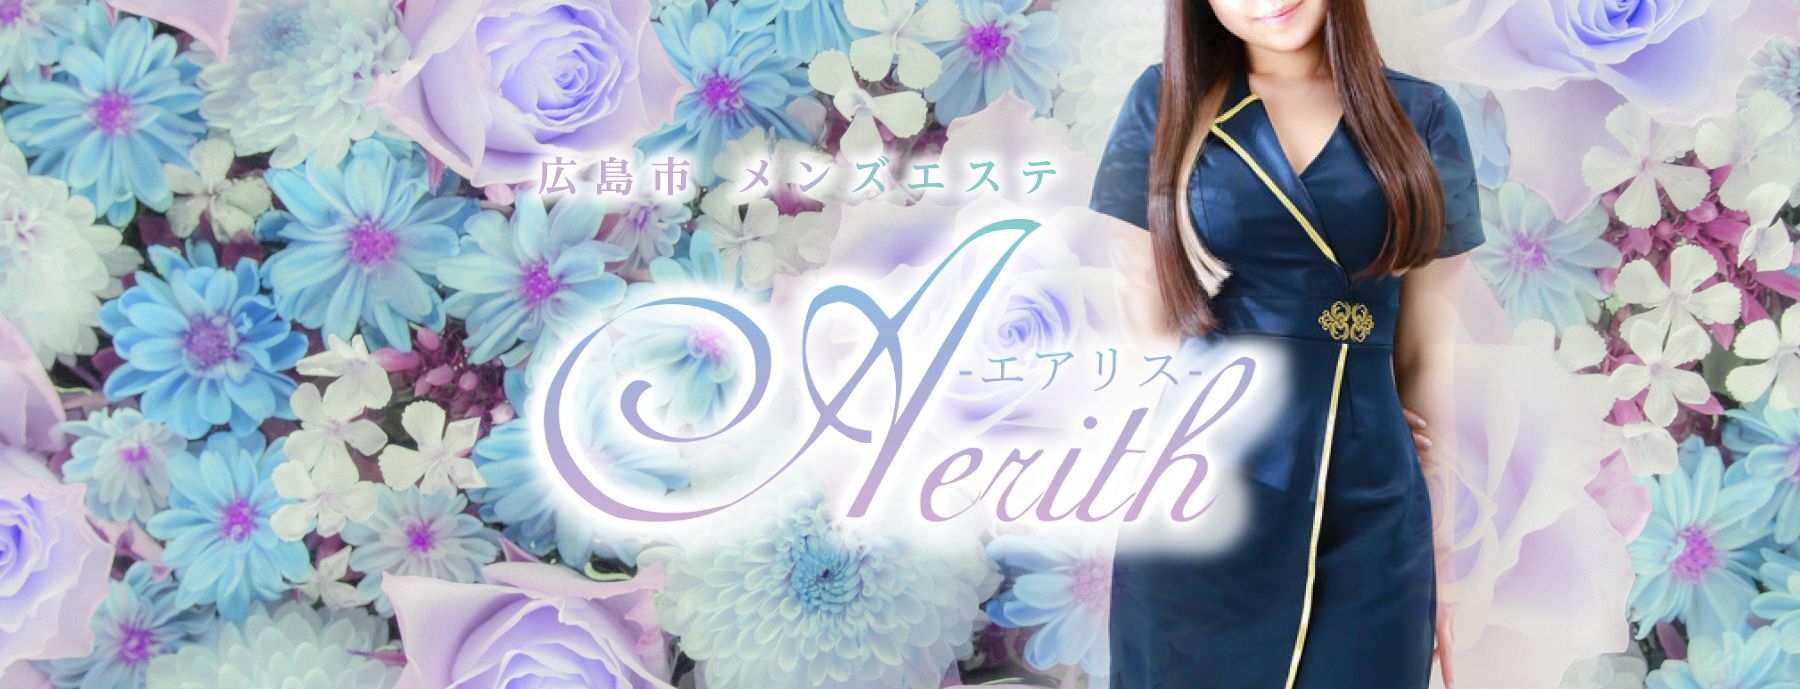 Aerith 〜エアリス〜